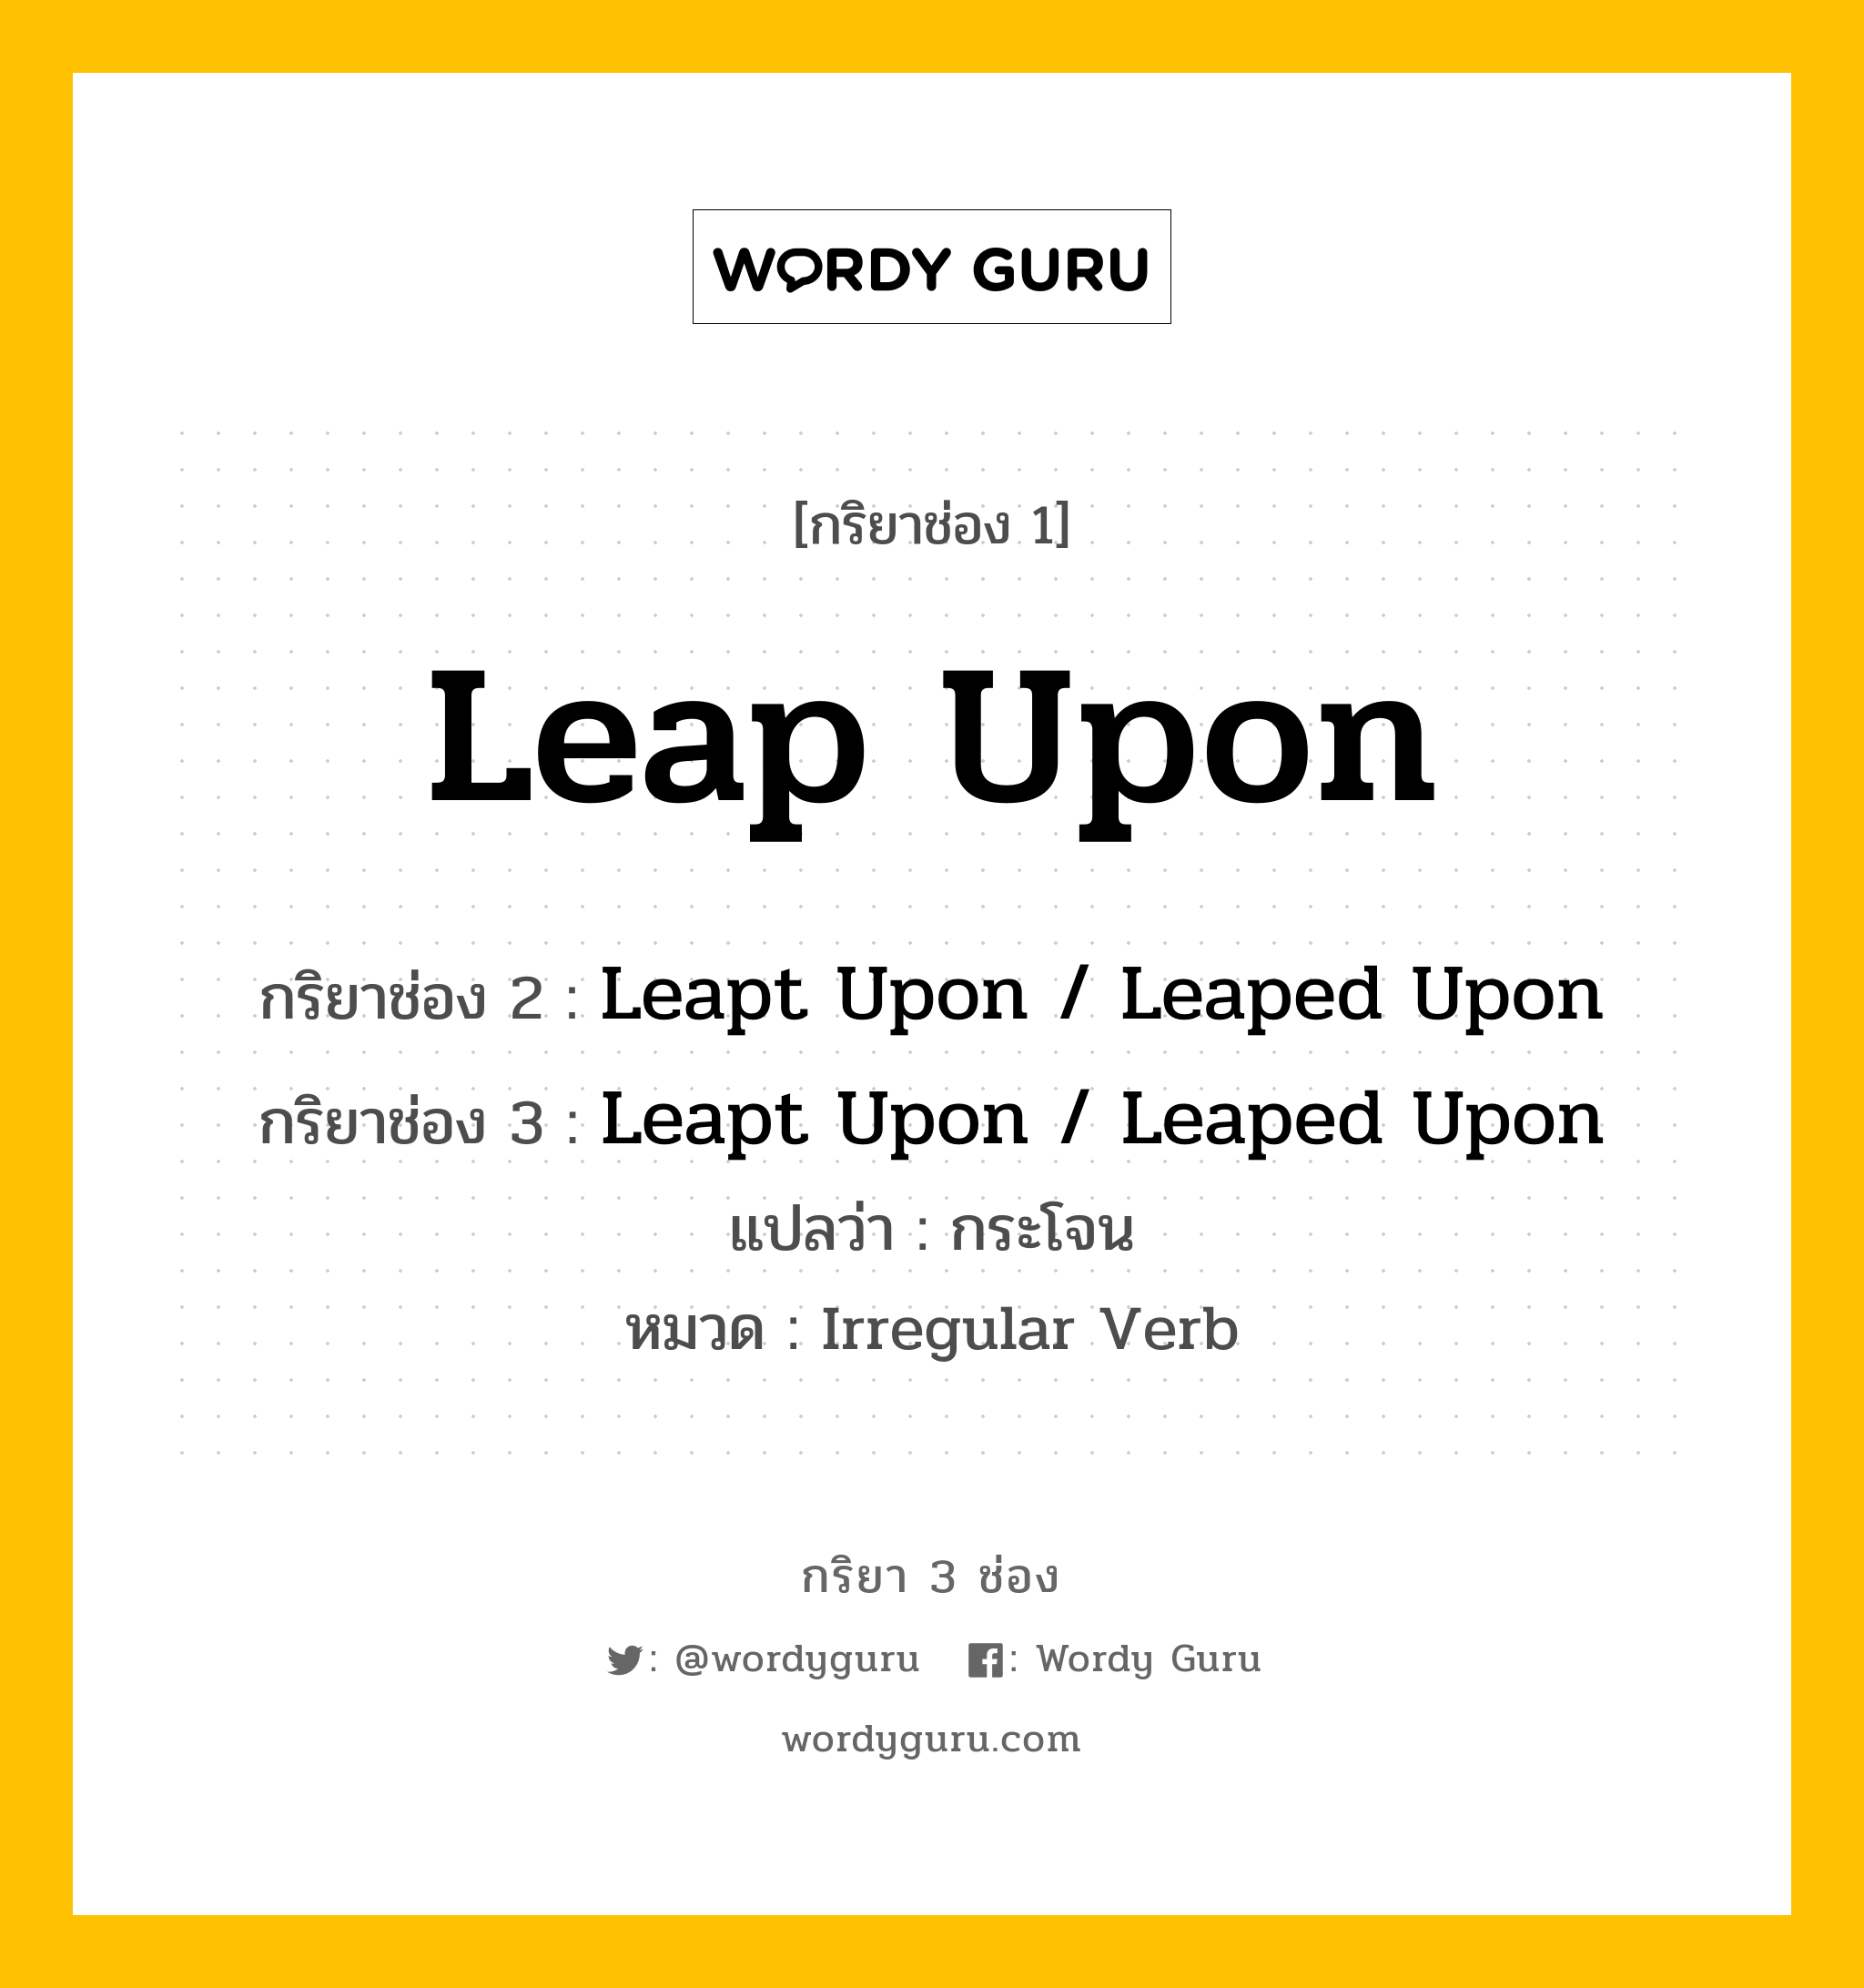 กริยา 3 ช่อง: Leap Upon ช่อง 2 Leap Upon ช่อง 3 คืออะไร, กริยาช่อง 1 Leap Upon กริยาช่อง 2 Leapt Upon / Leaped Upon กริยาช่อง 3 Leapt Upon / Leaped Upon แปลว่า กระโจน หมวด Irregular Verb หมวด Irregular Verb